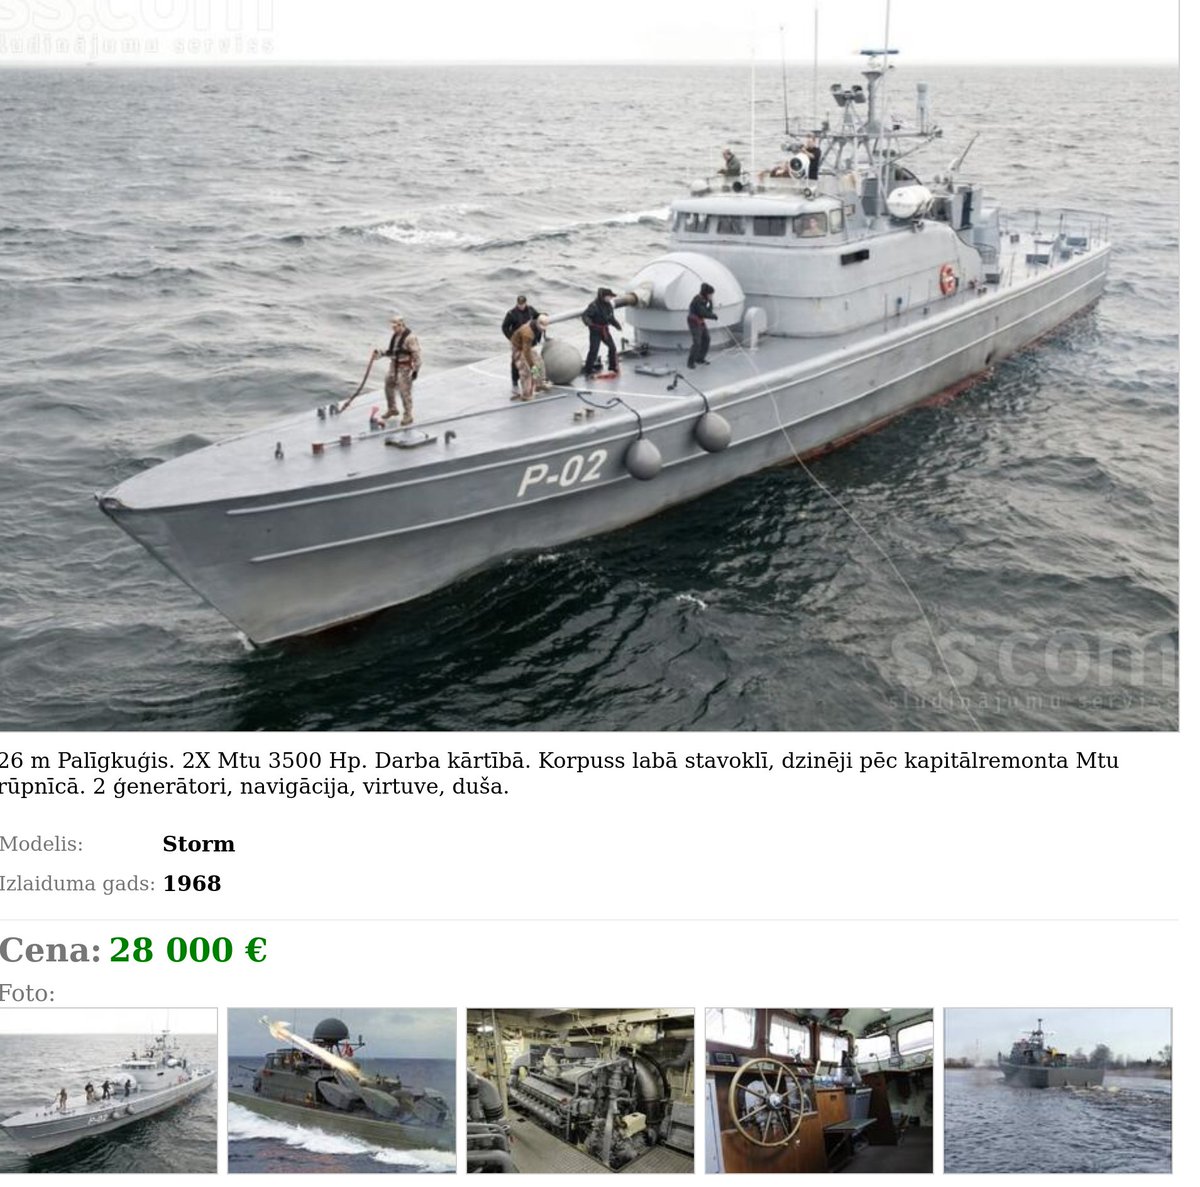 Ieraudzīju, ka SS sludinājumā pārdod labu laivu izklaidei uz ūdens. Šķiet, ka tā ir norvēģu HMS Jägaren (V150)? Tikai €28 tkst? Nav slikti.

ss.lv/msg/lv/transpo…